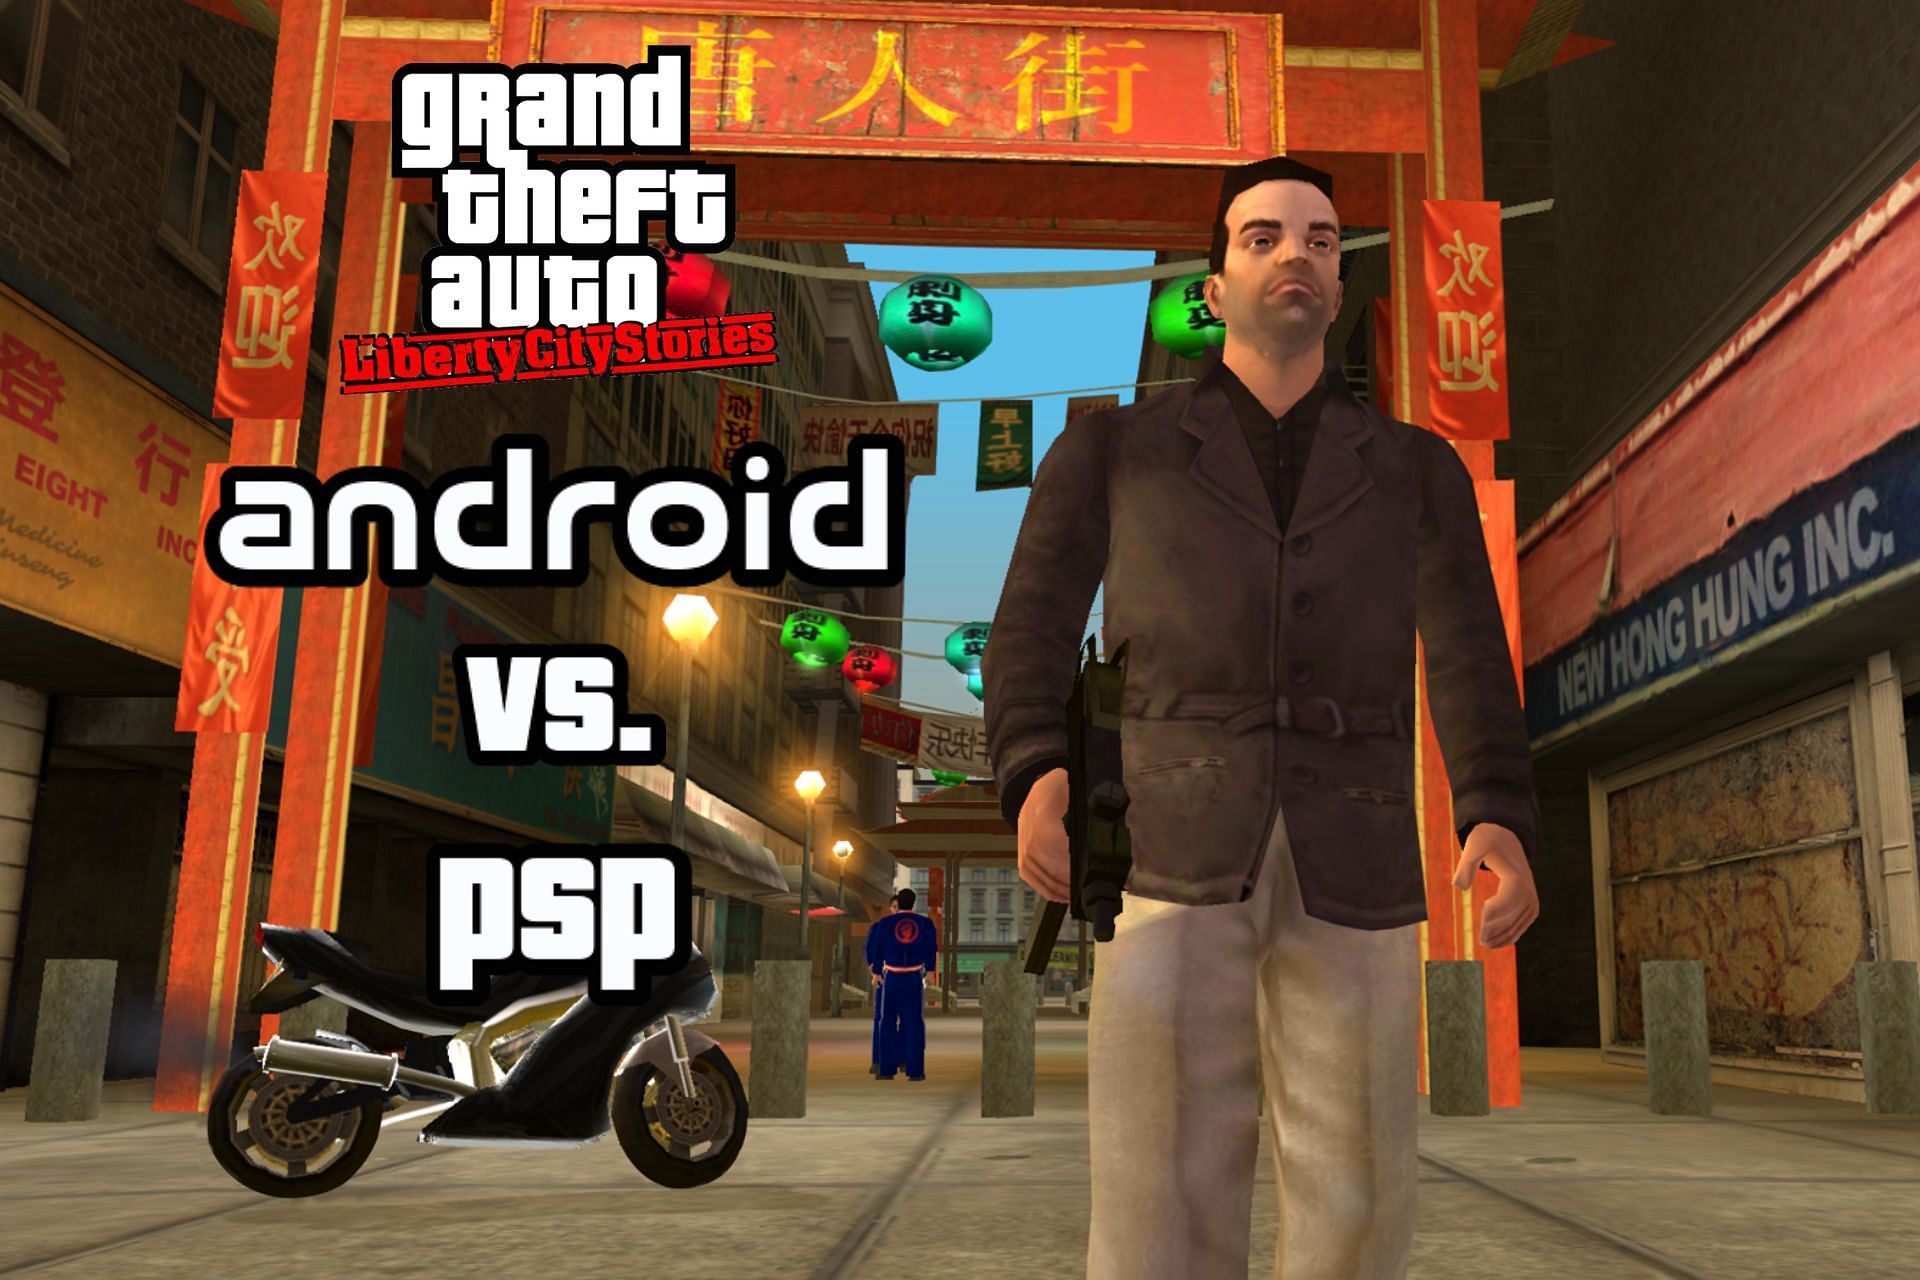 Jogo Psp Gta Grand Theft Auto Liberty. City Stories Completo - Desconto no  Preço